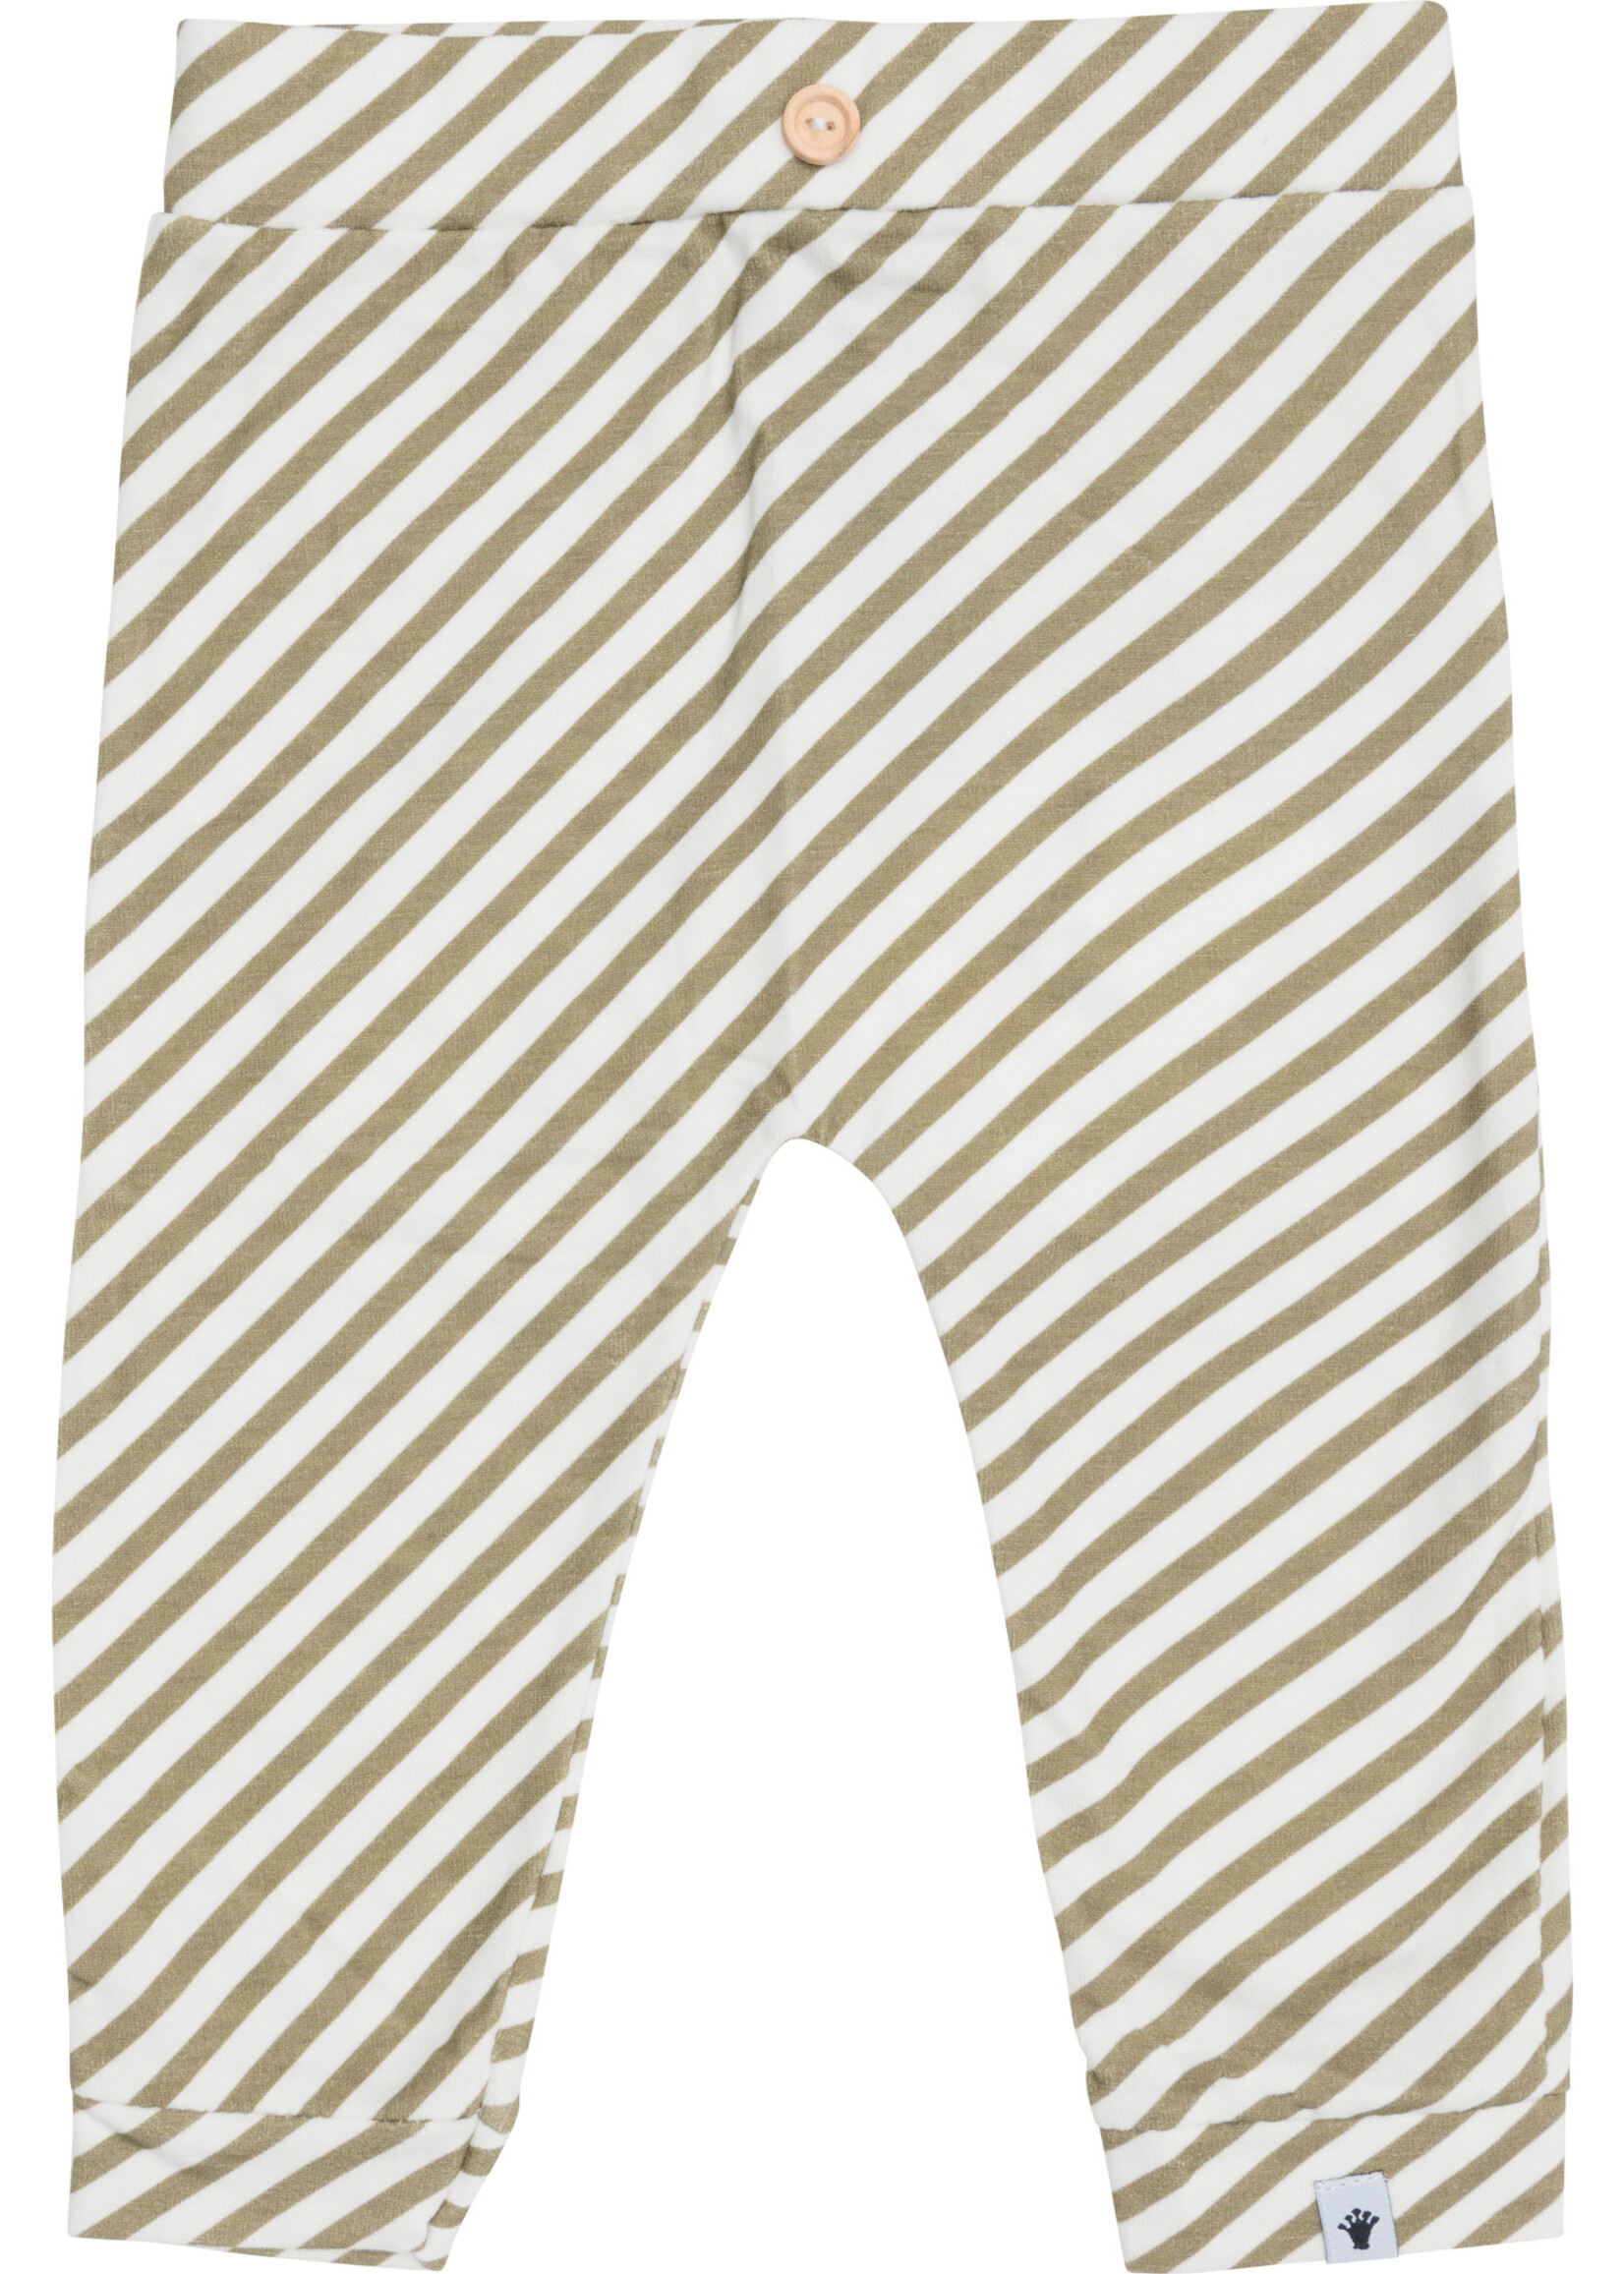 Klein Klein - trouser stripe off white / twill